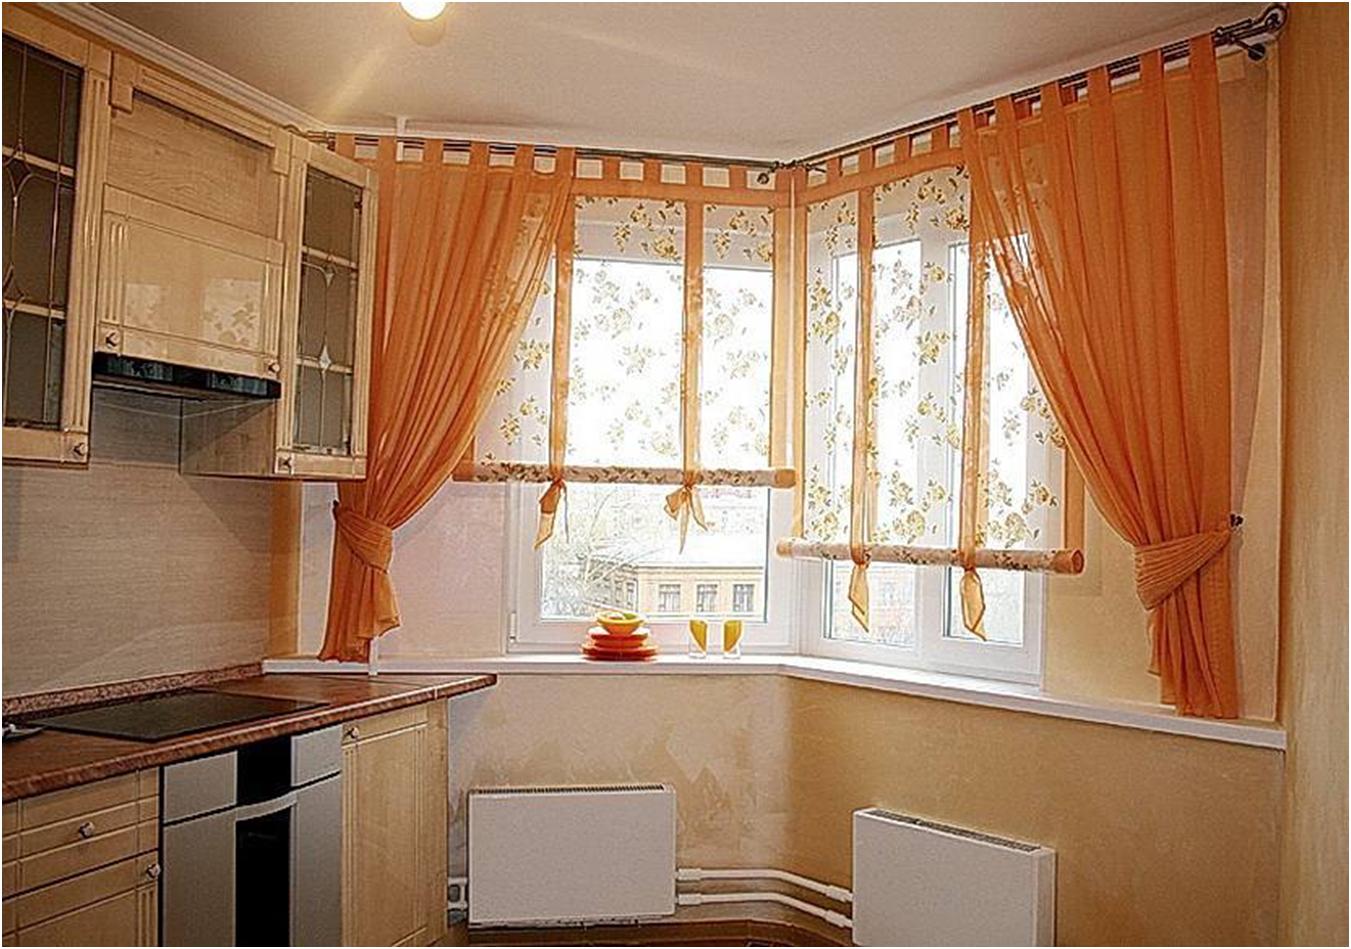 Преимущества и недостатки занавесок для окна, если на кухне есть выход на балкон